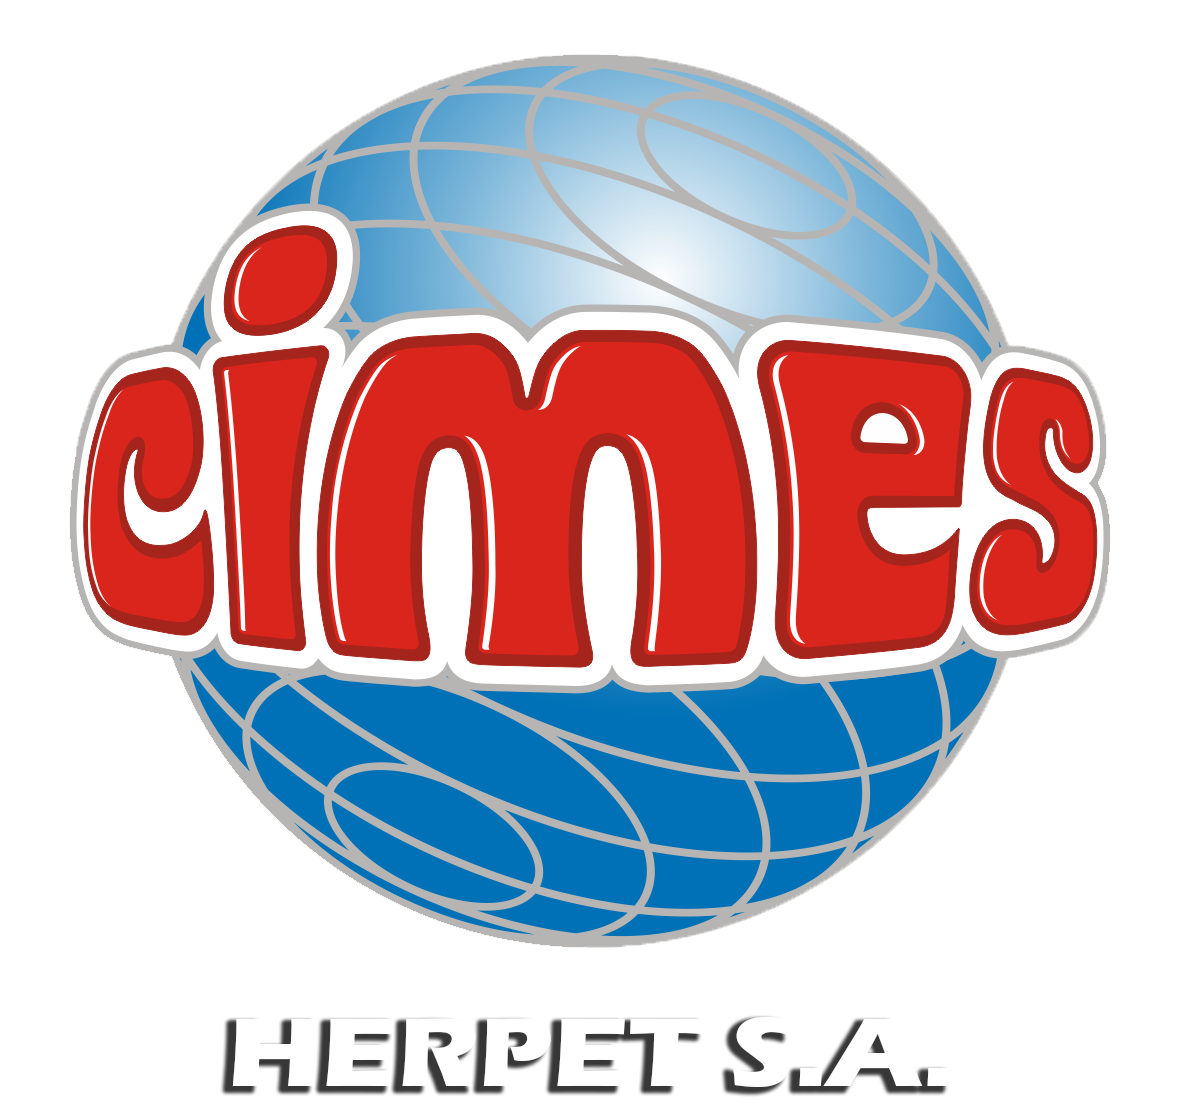 Cimes – Herpet S.A.